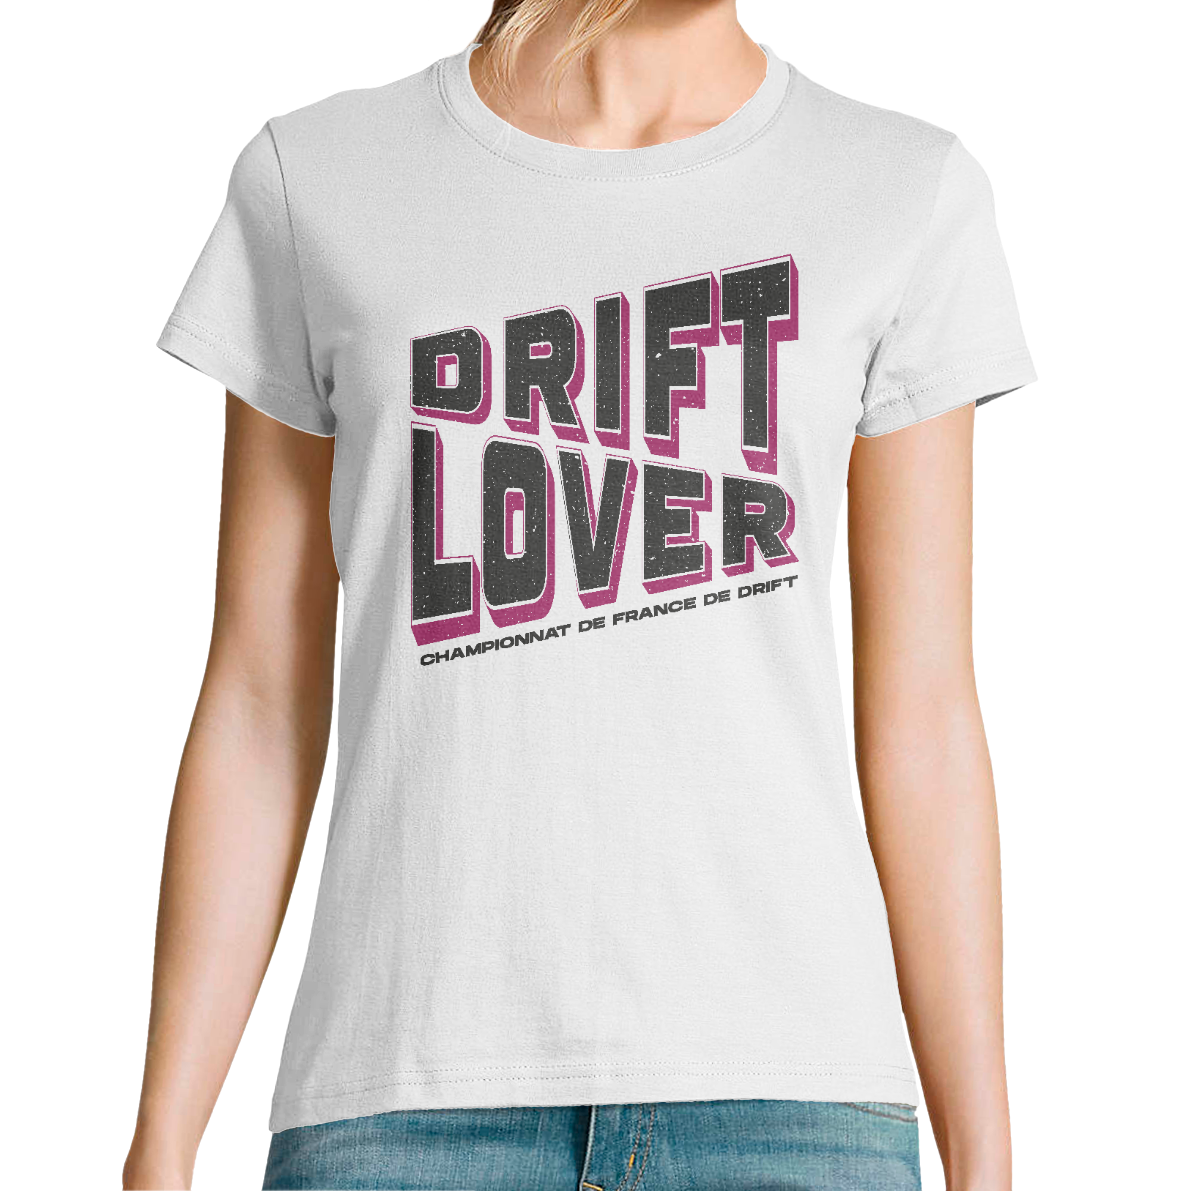 T-Shirt "Drift lover"